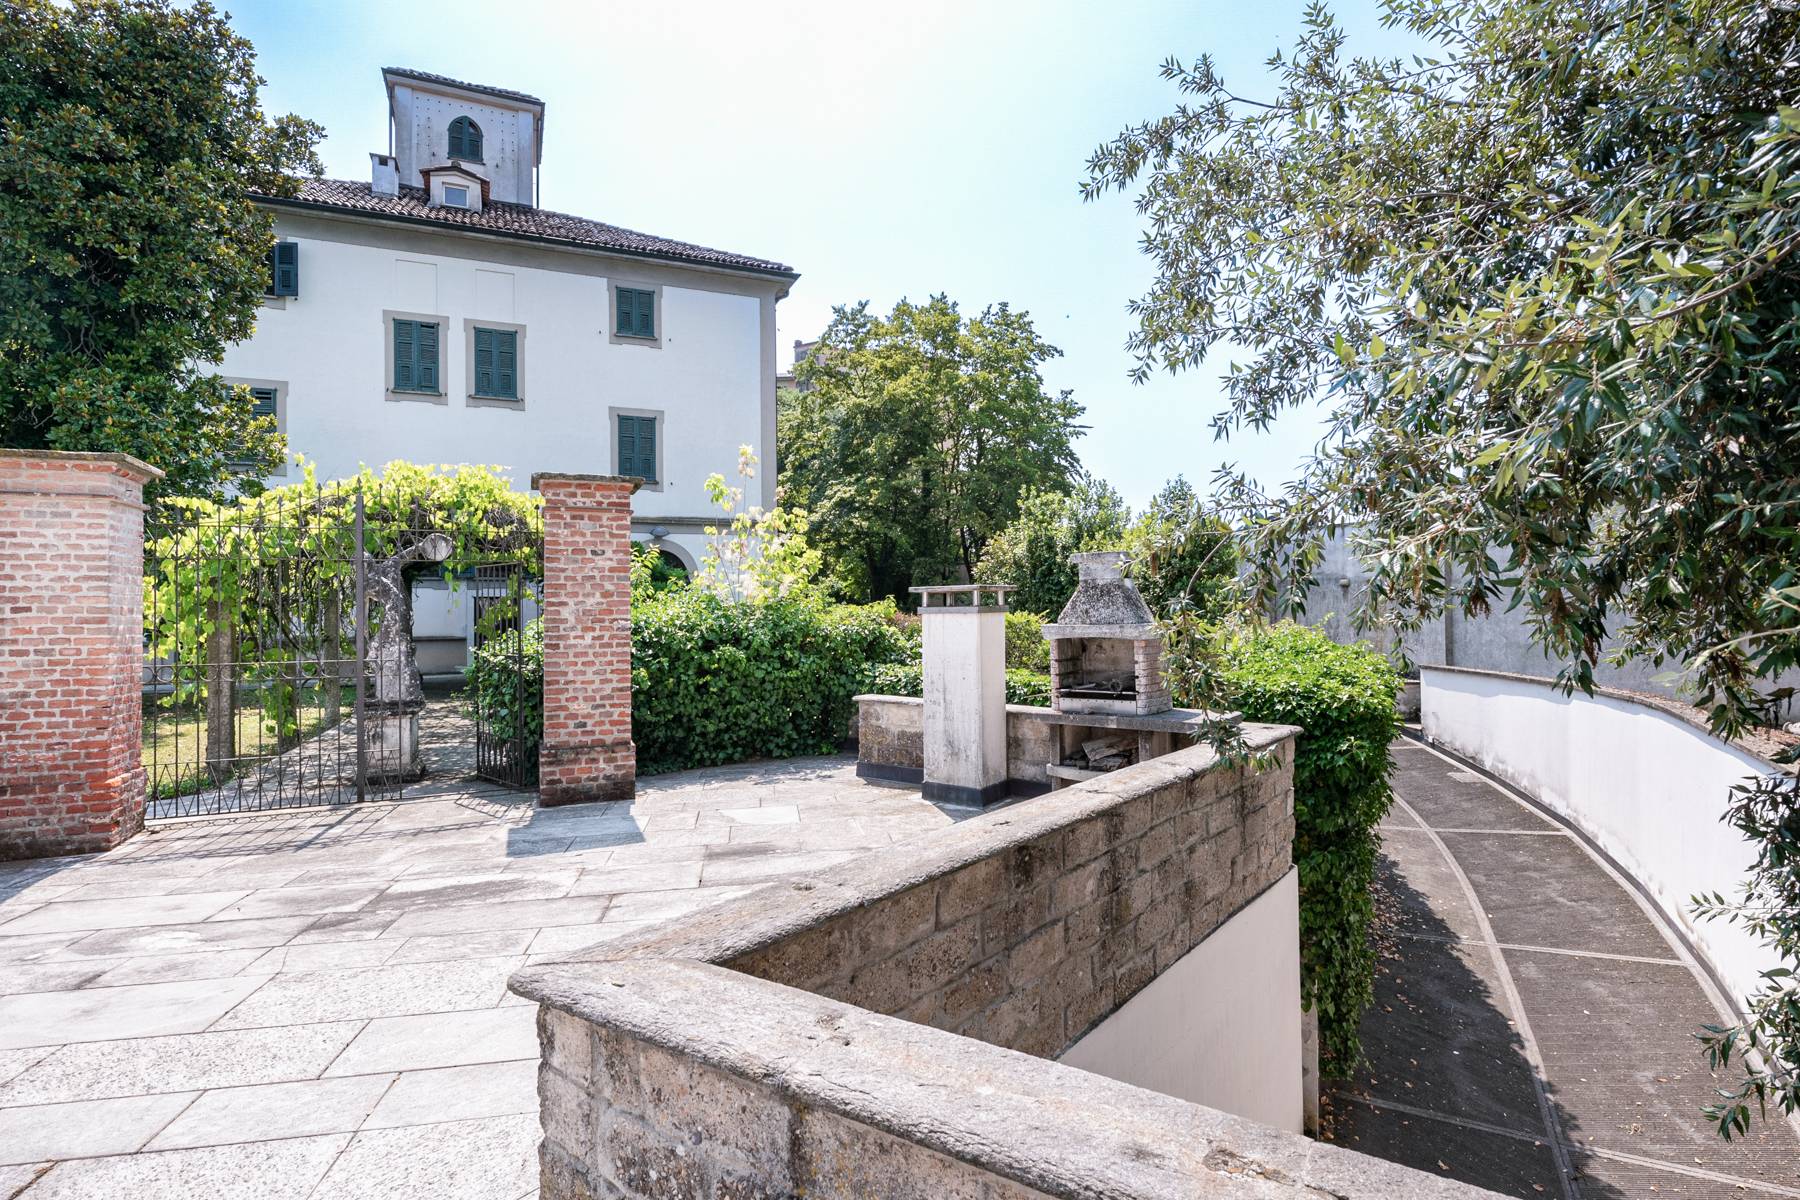 Villa in Vendita a Vigevano: 5 locali, 1000 mq - Foto 22